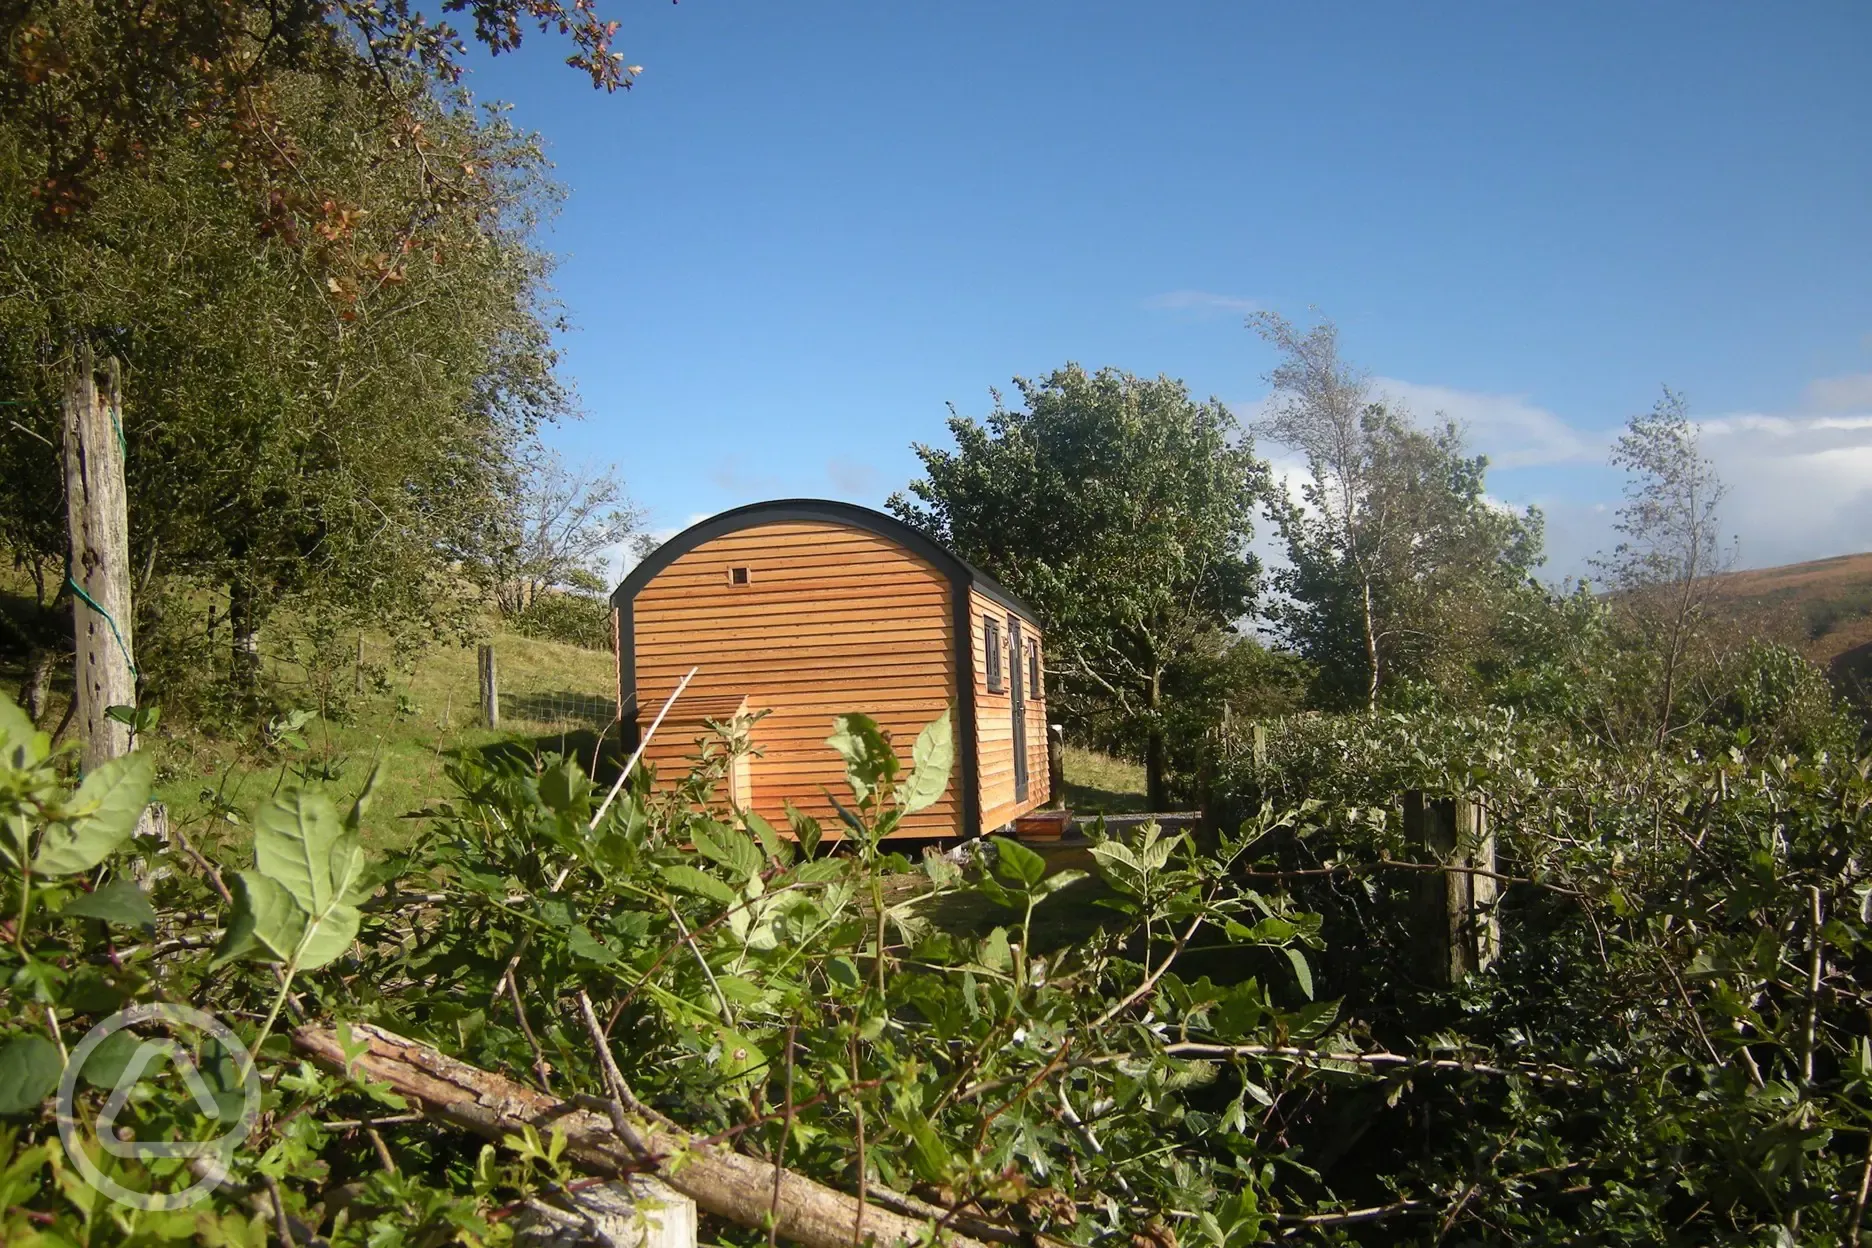 Shepherd's hut from campsite hedge